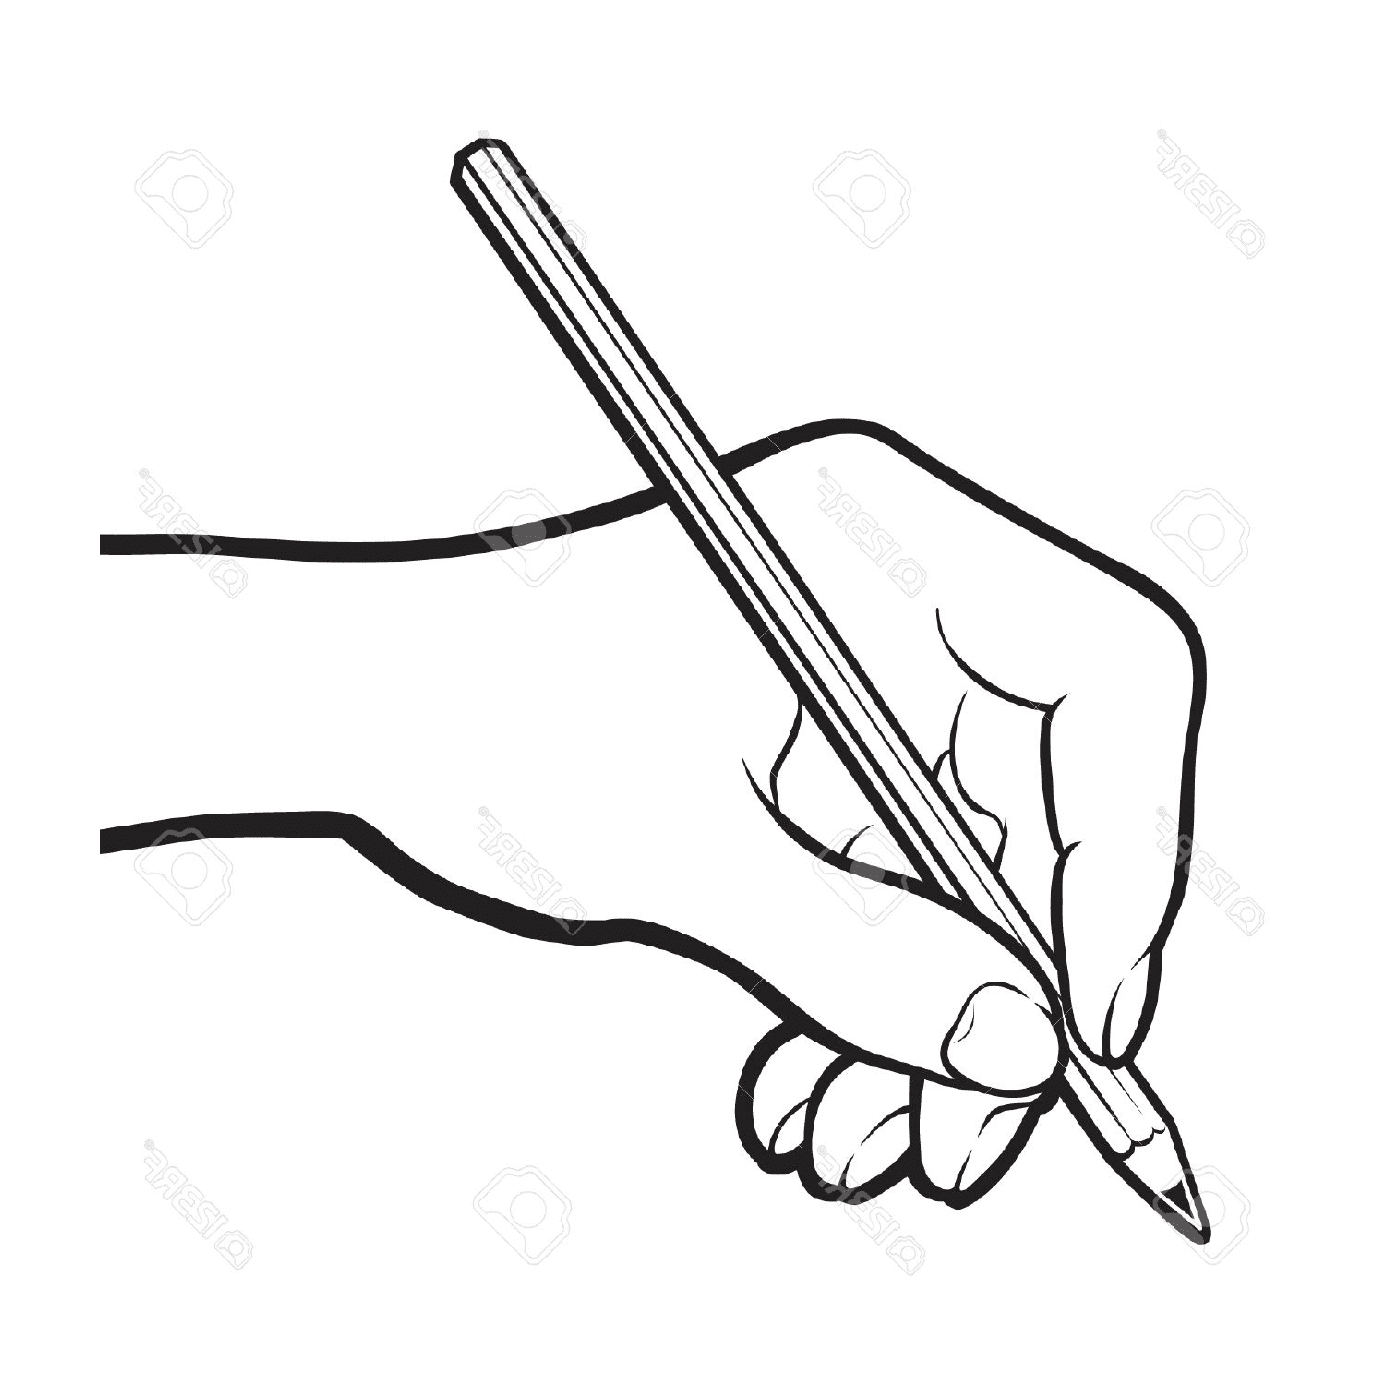  mano que sostiene el dibujo a lápiz 